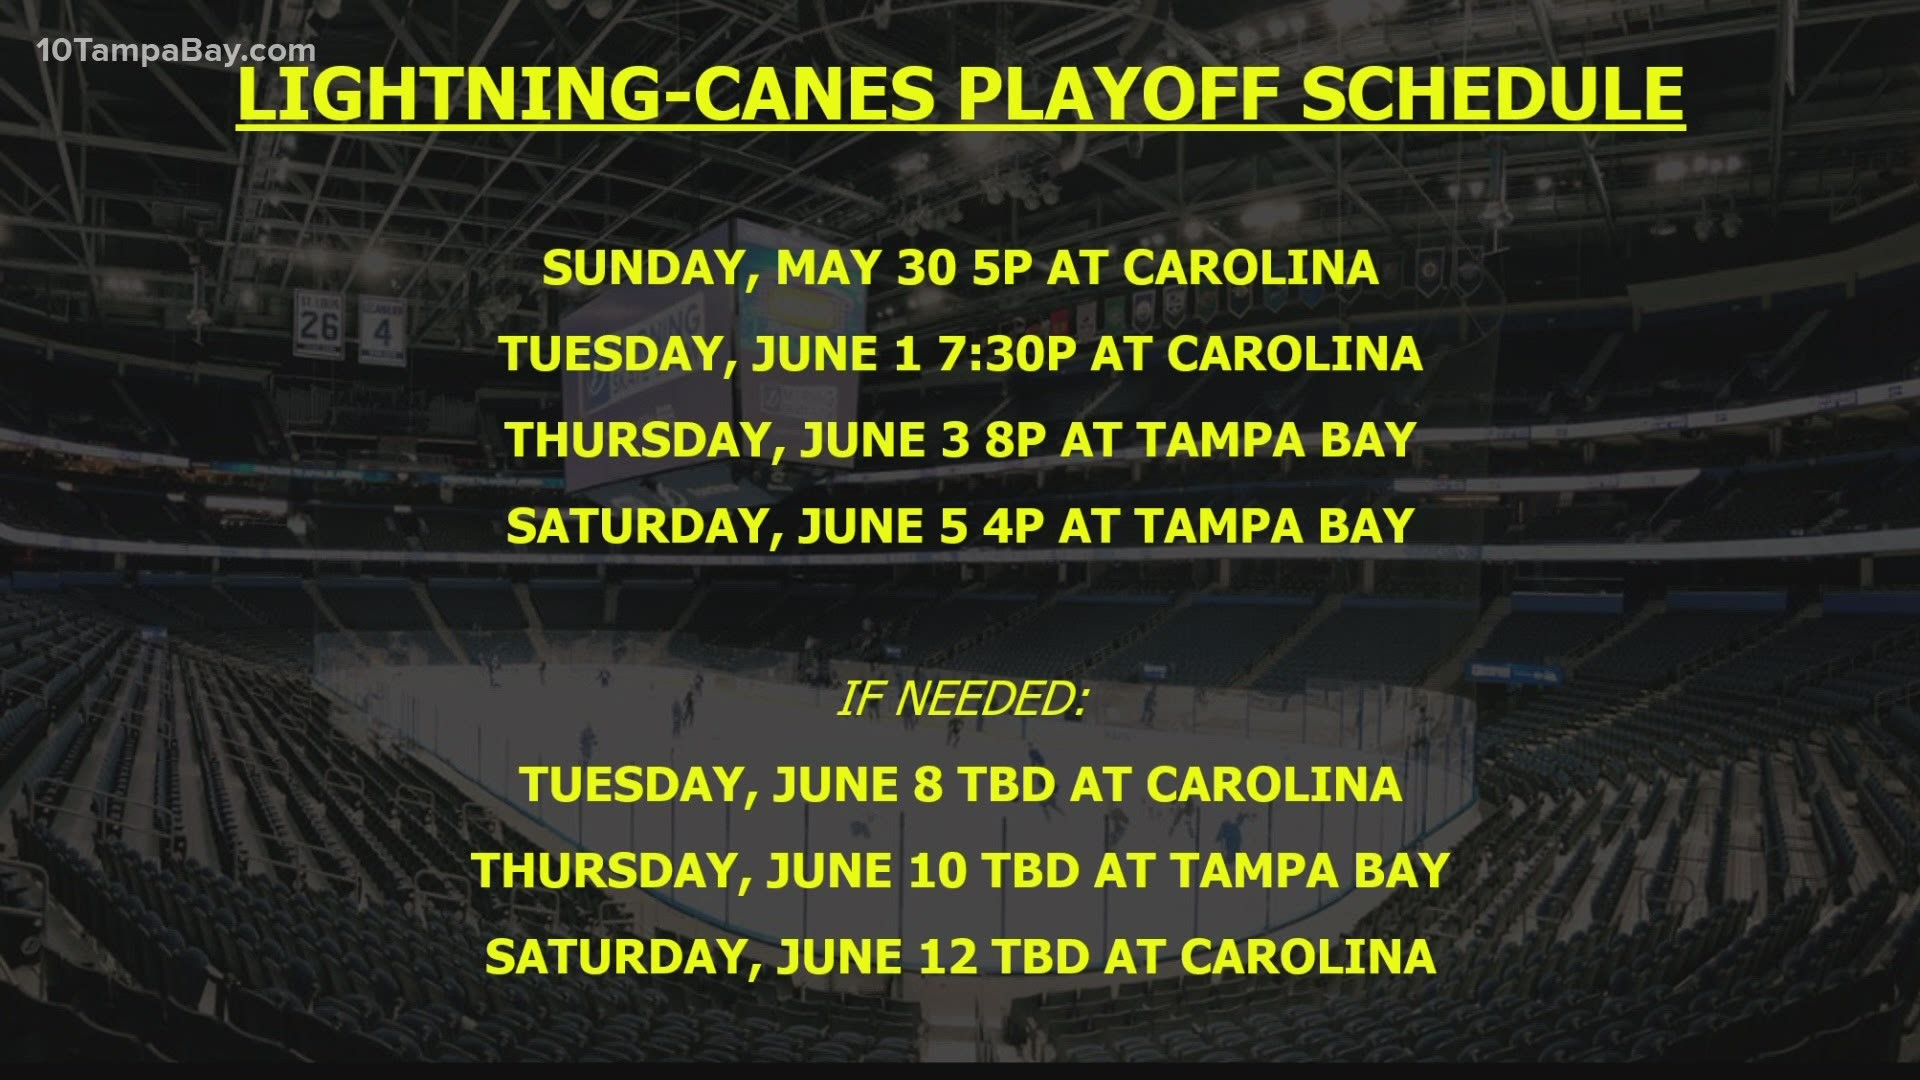 Tampa Bay Lightning, Carolina Panthers Round 2 playoff schedule 